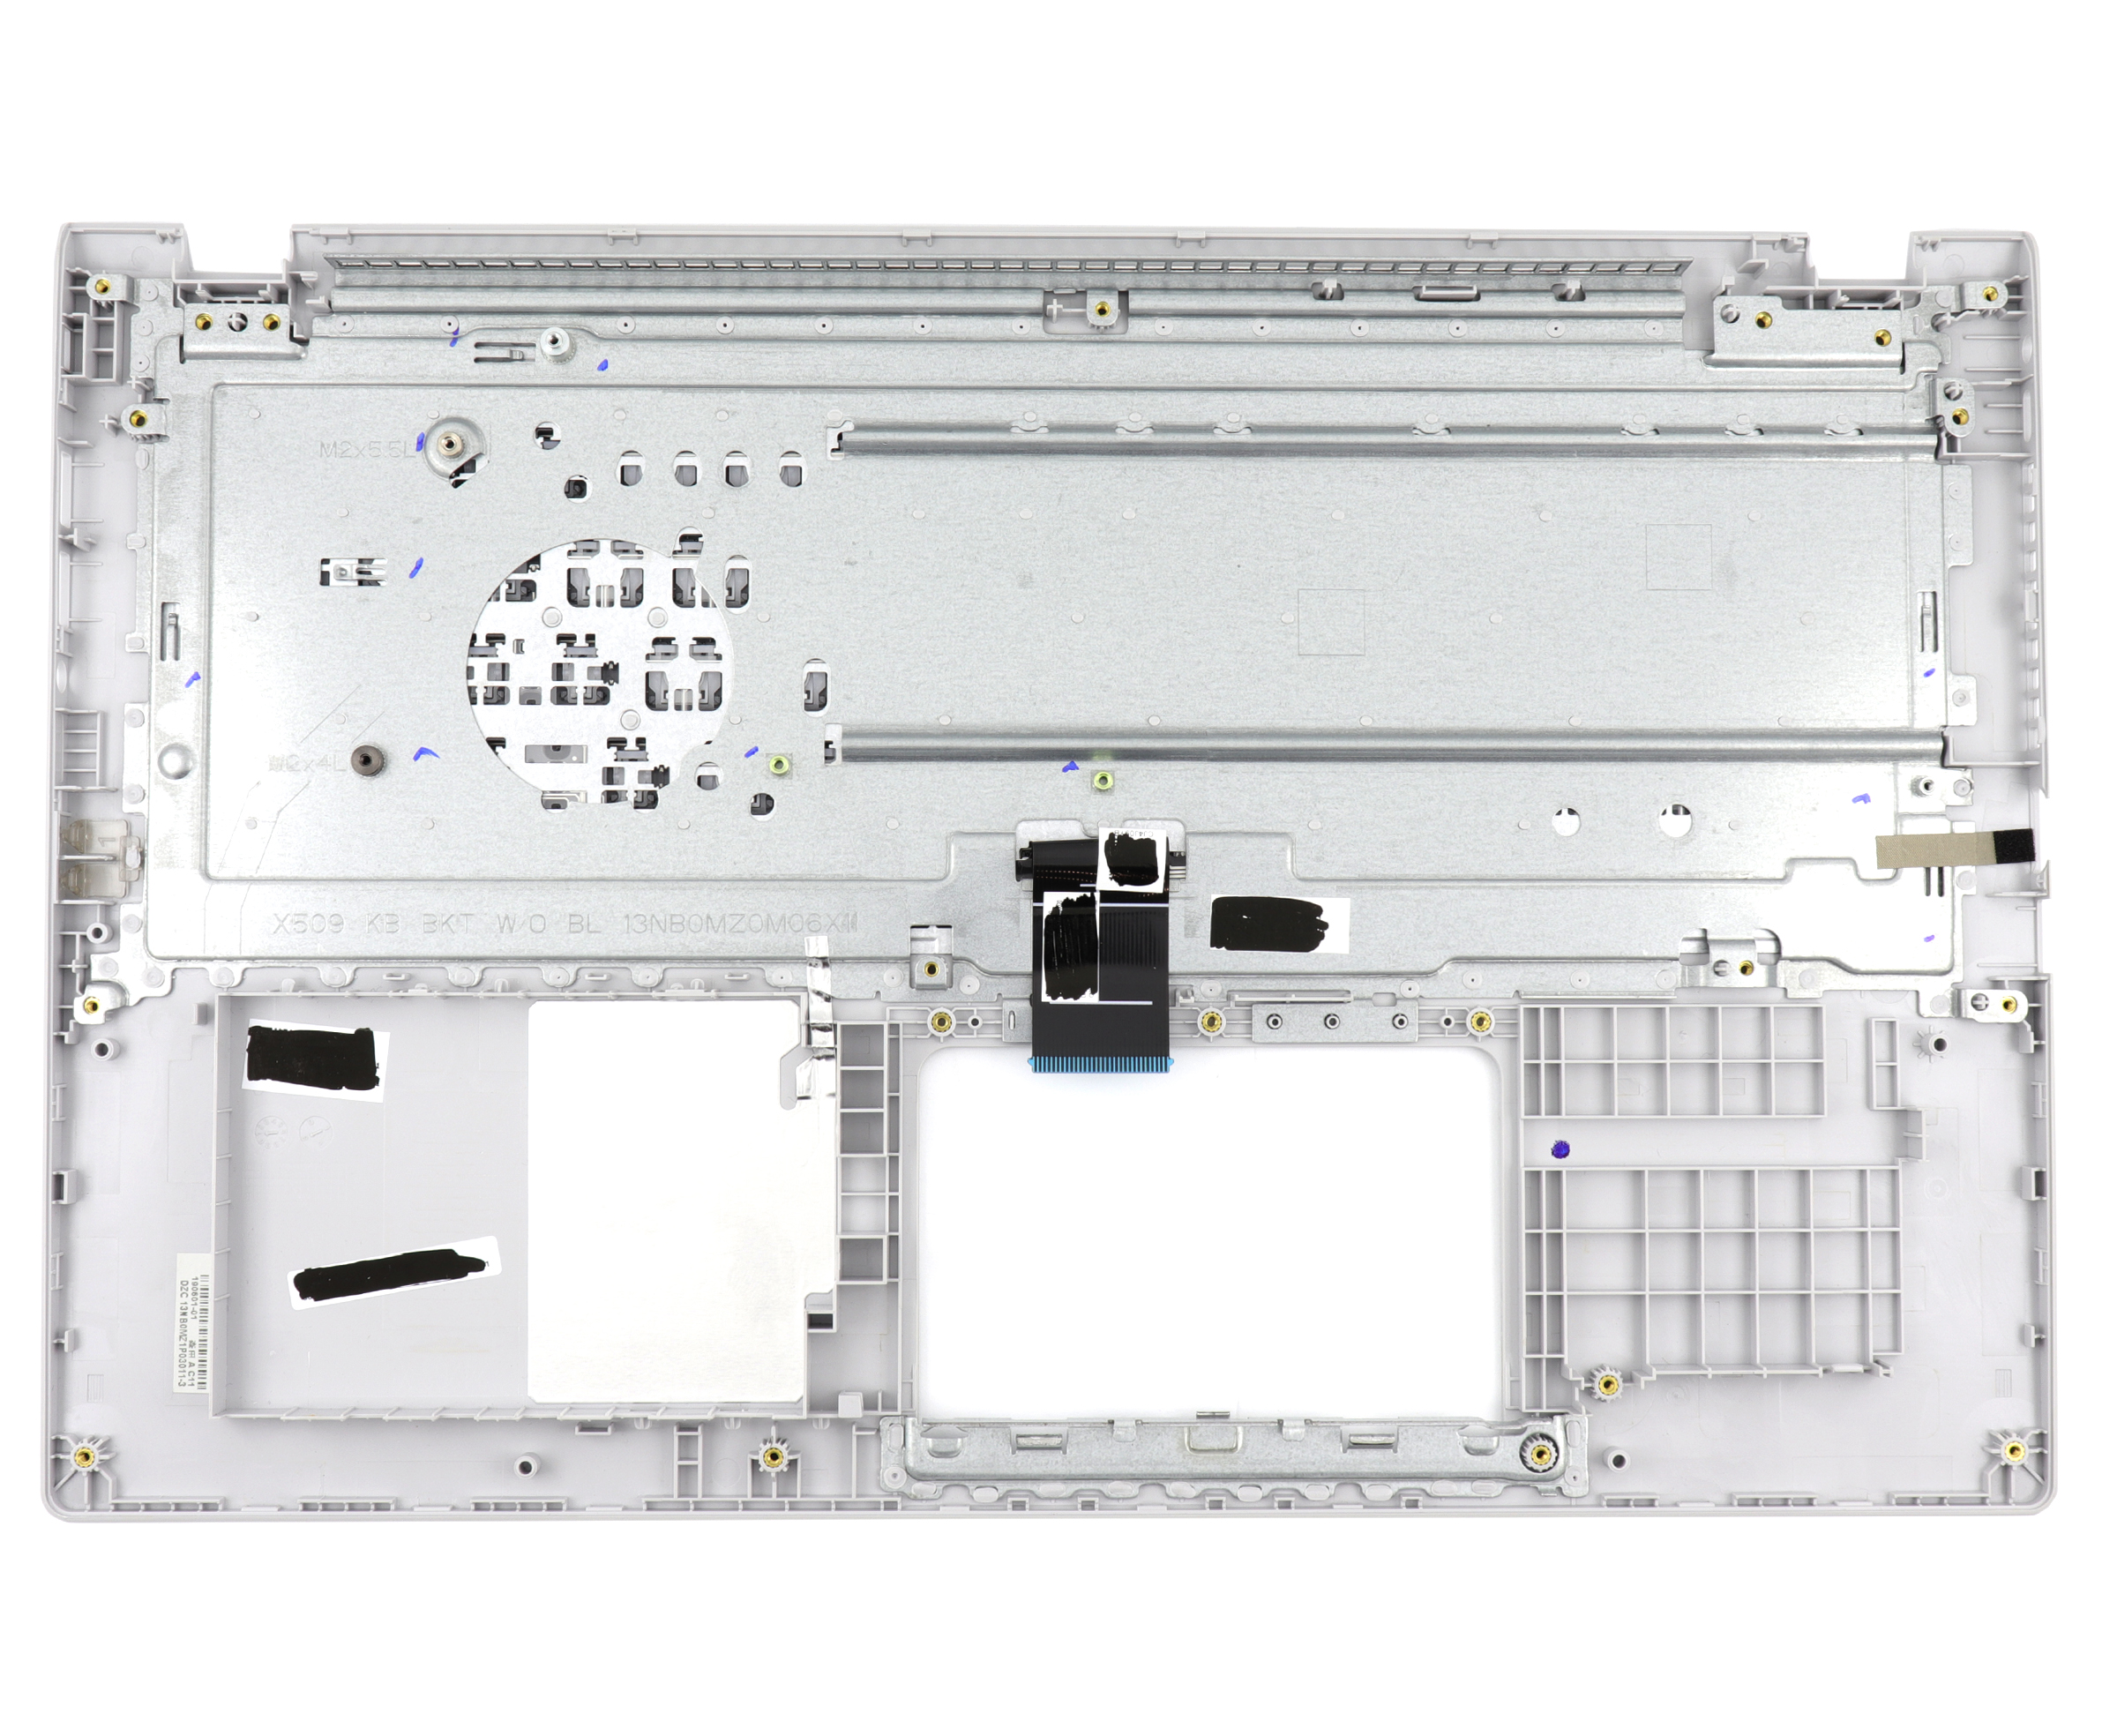 Tastatura Asus VivoBook X509 Gri cu Palmrest Argintiu